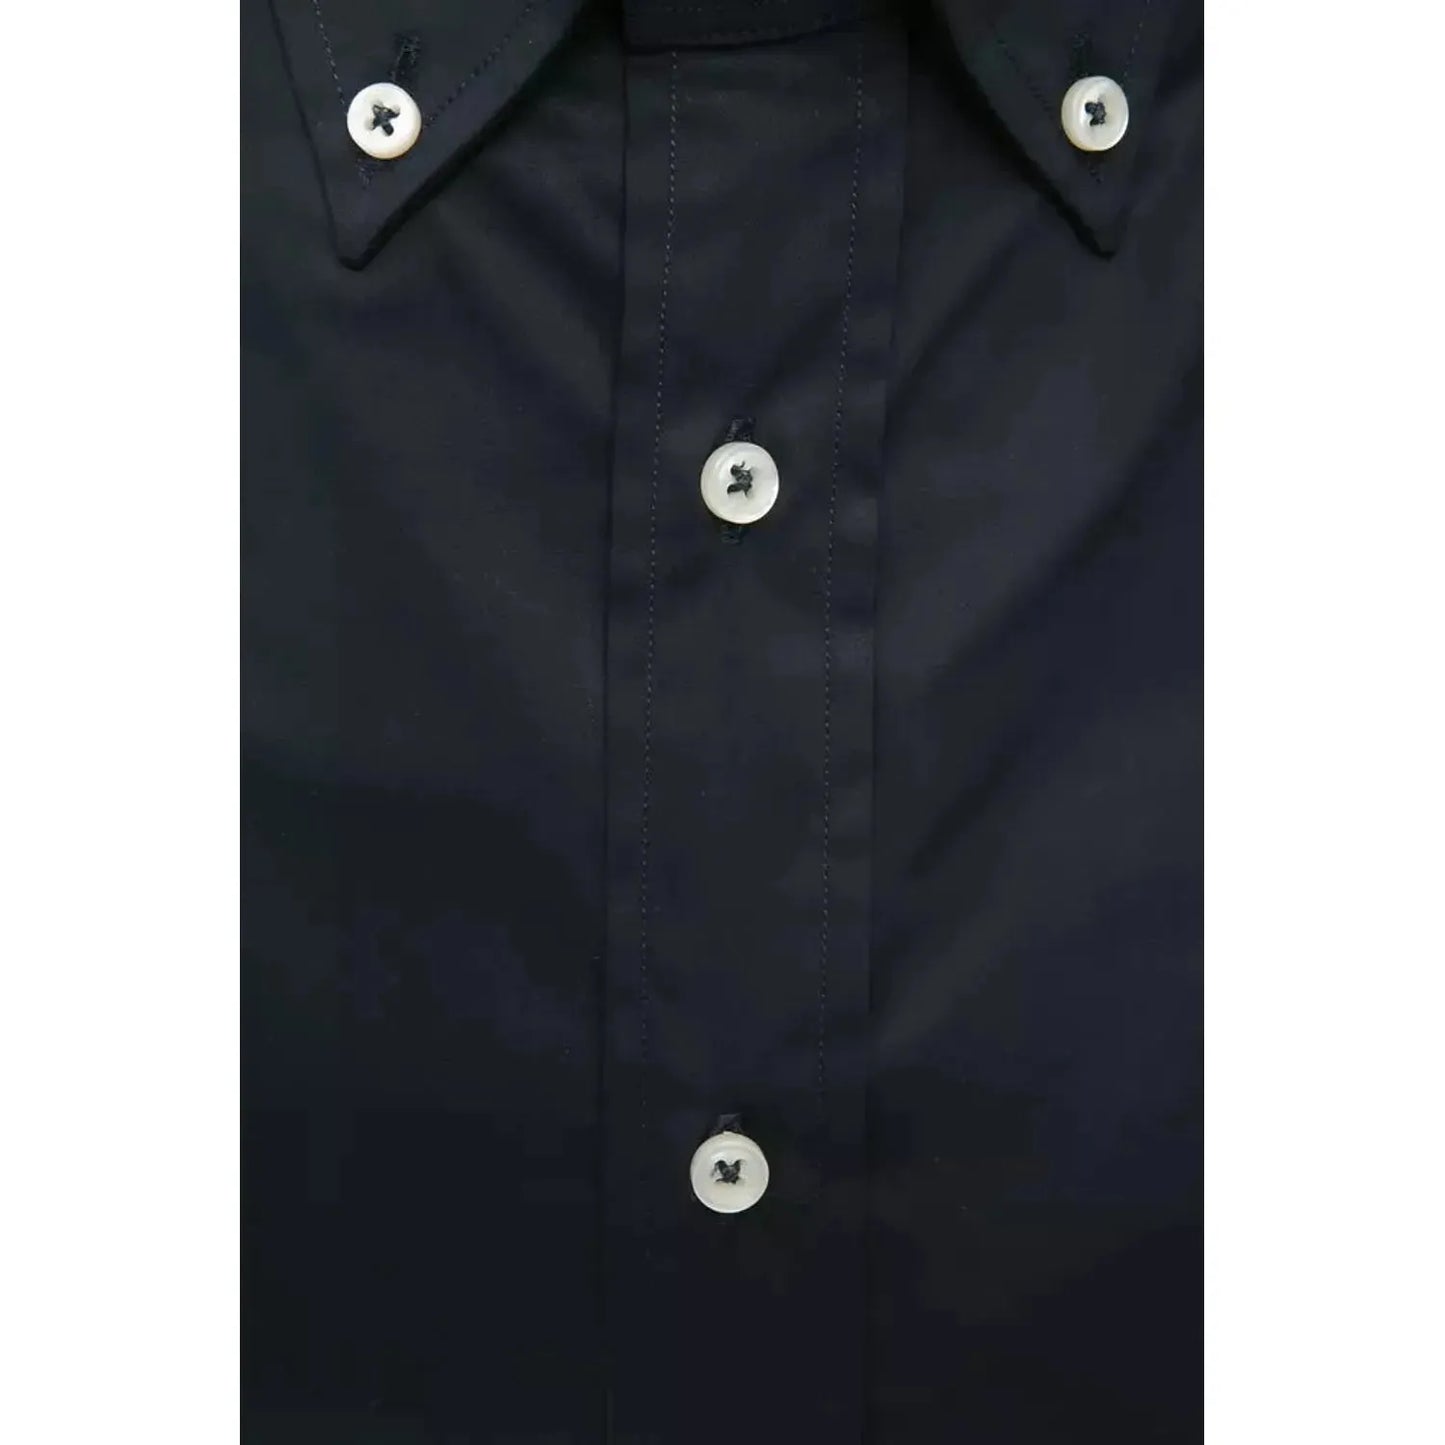 Robert Friedman Elegant Black Button Down Regular Shirt black-cotton-shirt-23